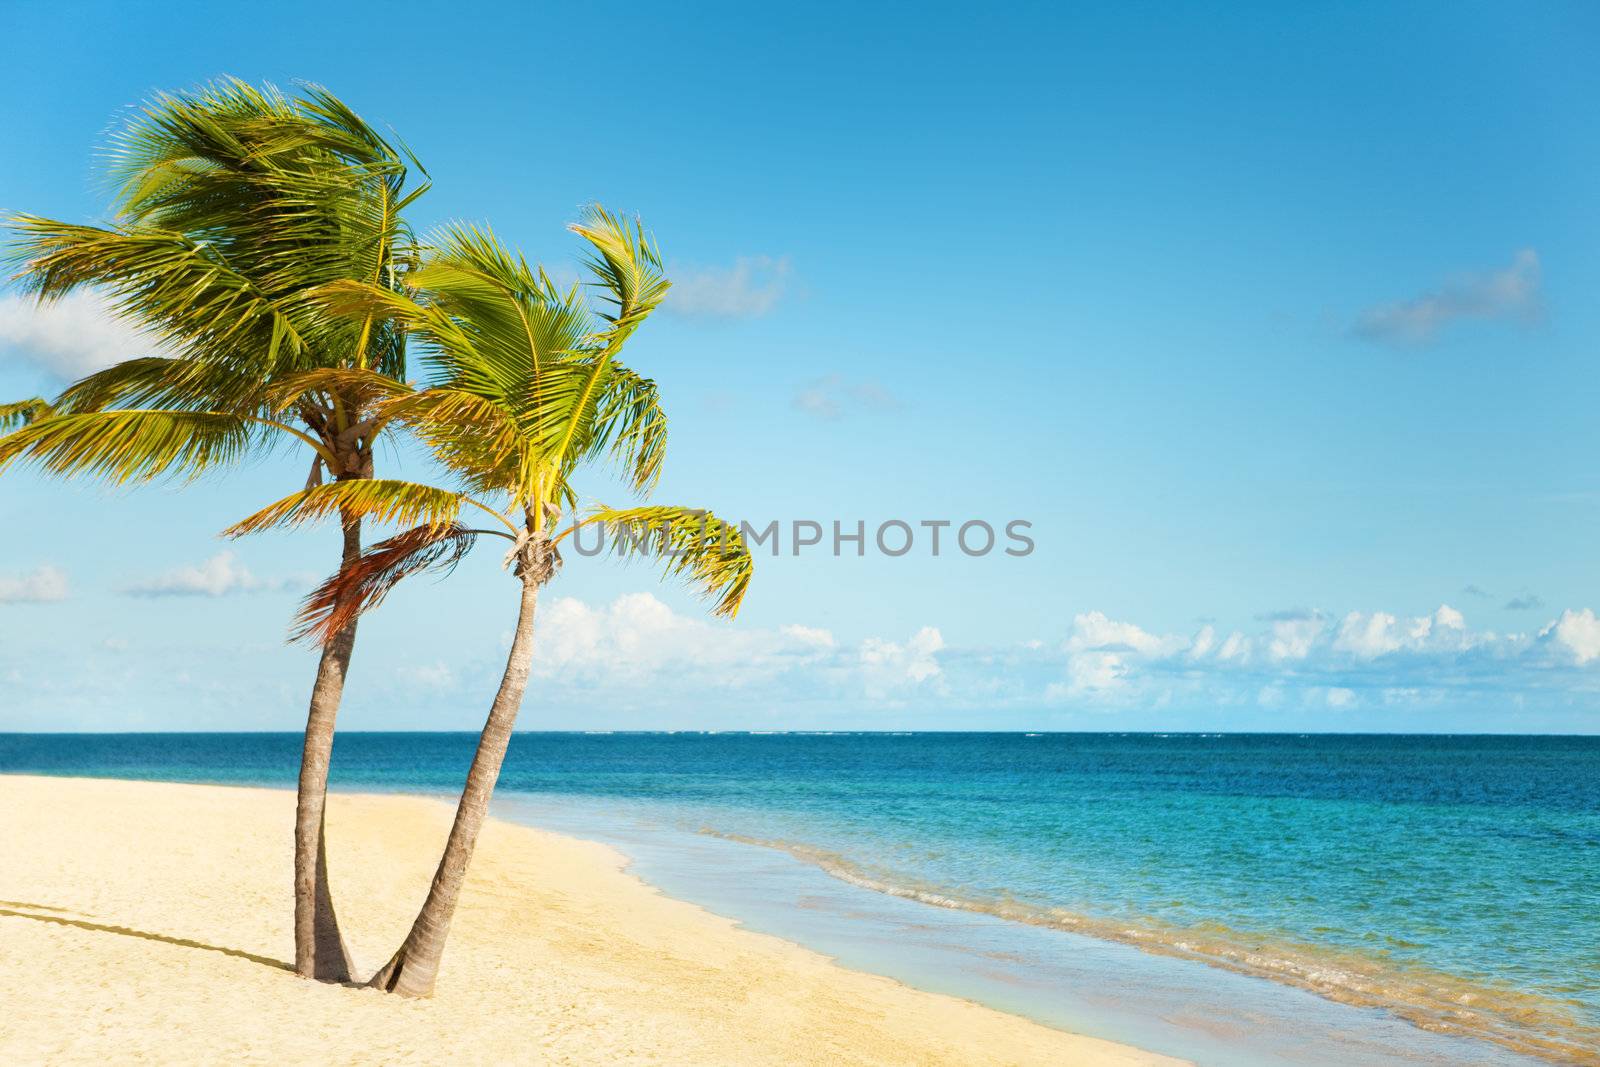 Caribbean coast by mihhailov